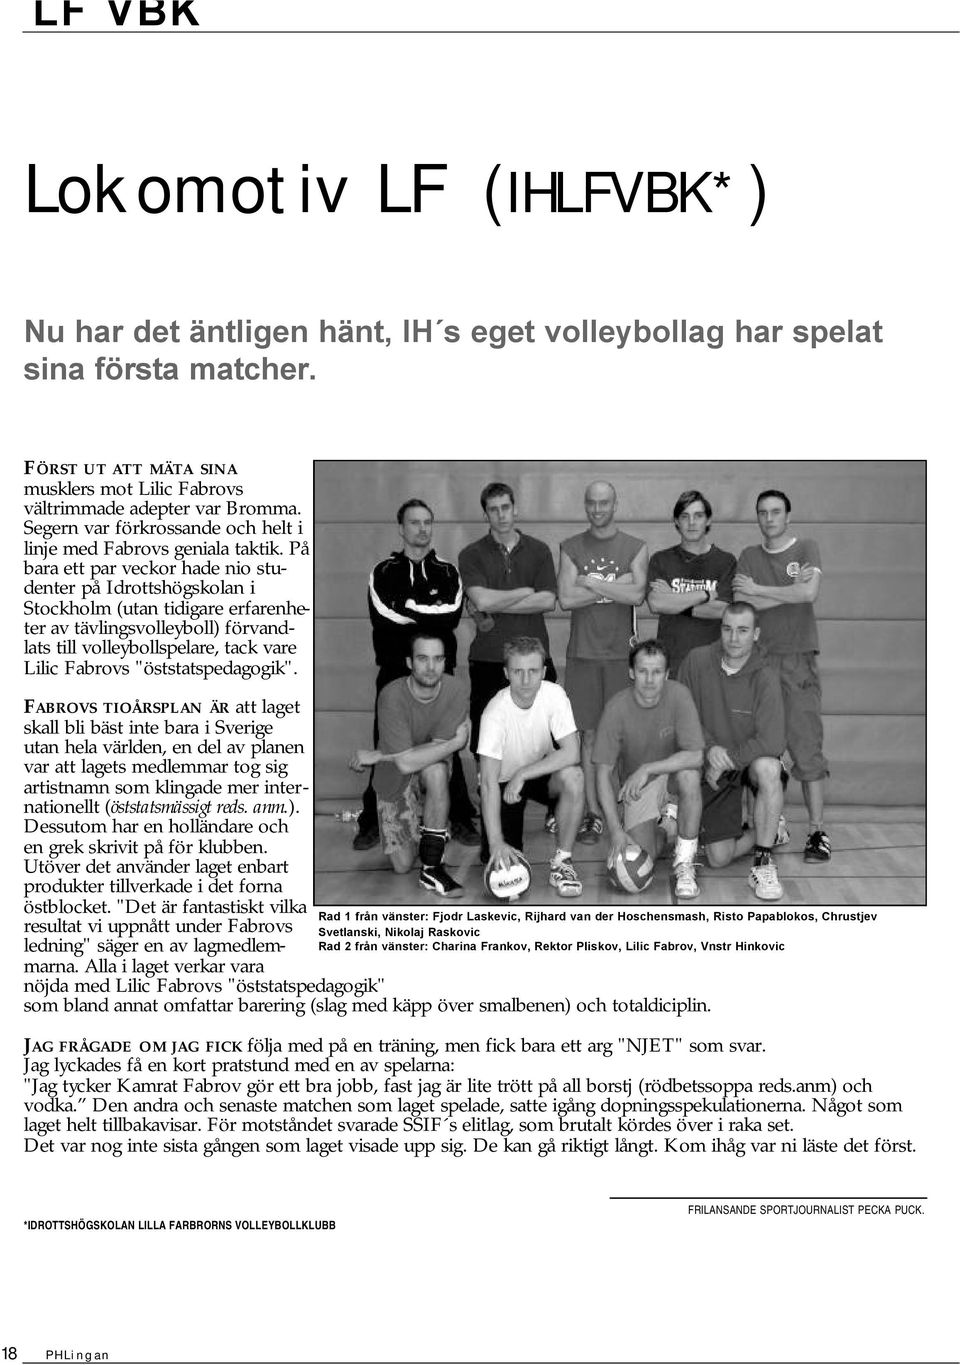 På bara ett par veckor hade io studeter på Idrottshögskola i Stockholm (uta tidigare erfareheter av tävligsvolleyboll) förvadlats till volleybollspelare, tack vare Lilic Fabrovs "öststatspedagogik".